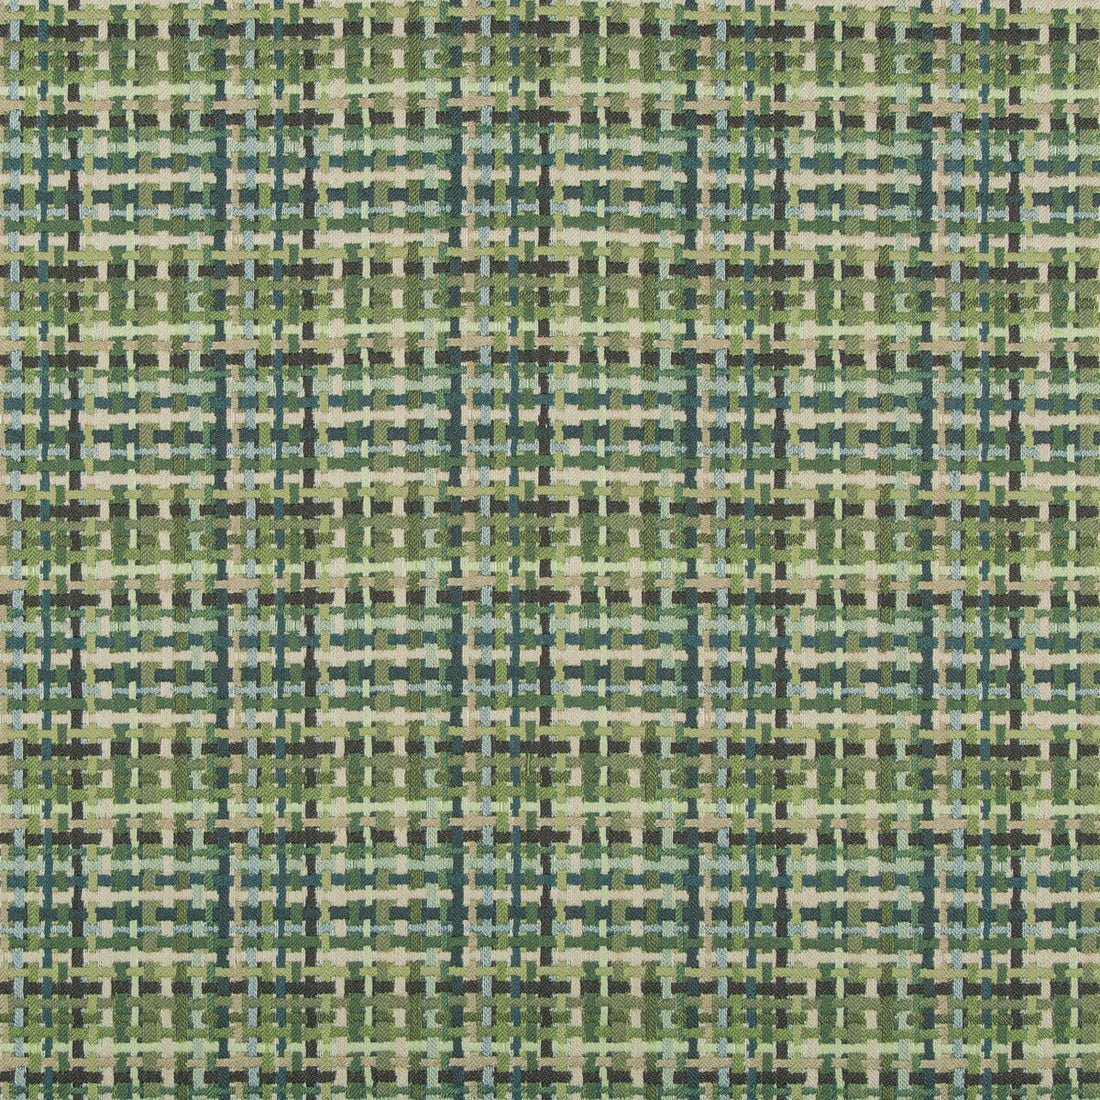 Kravet Design fabric in 35598-303 color - pattern 35598.303.0 - by Kravet Design